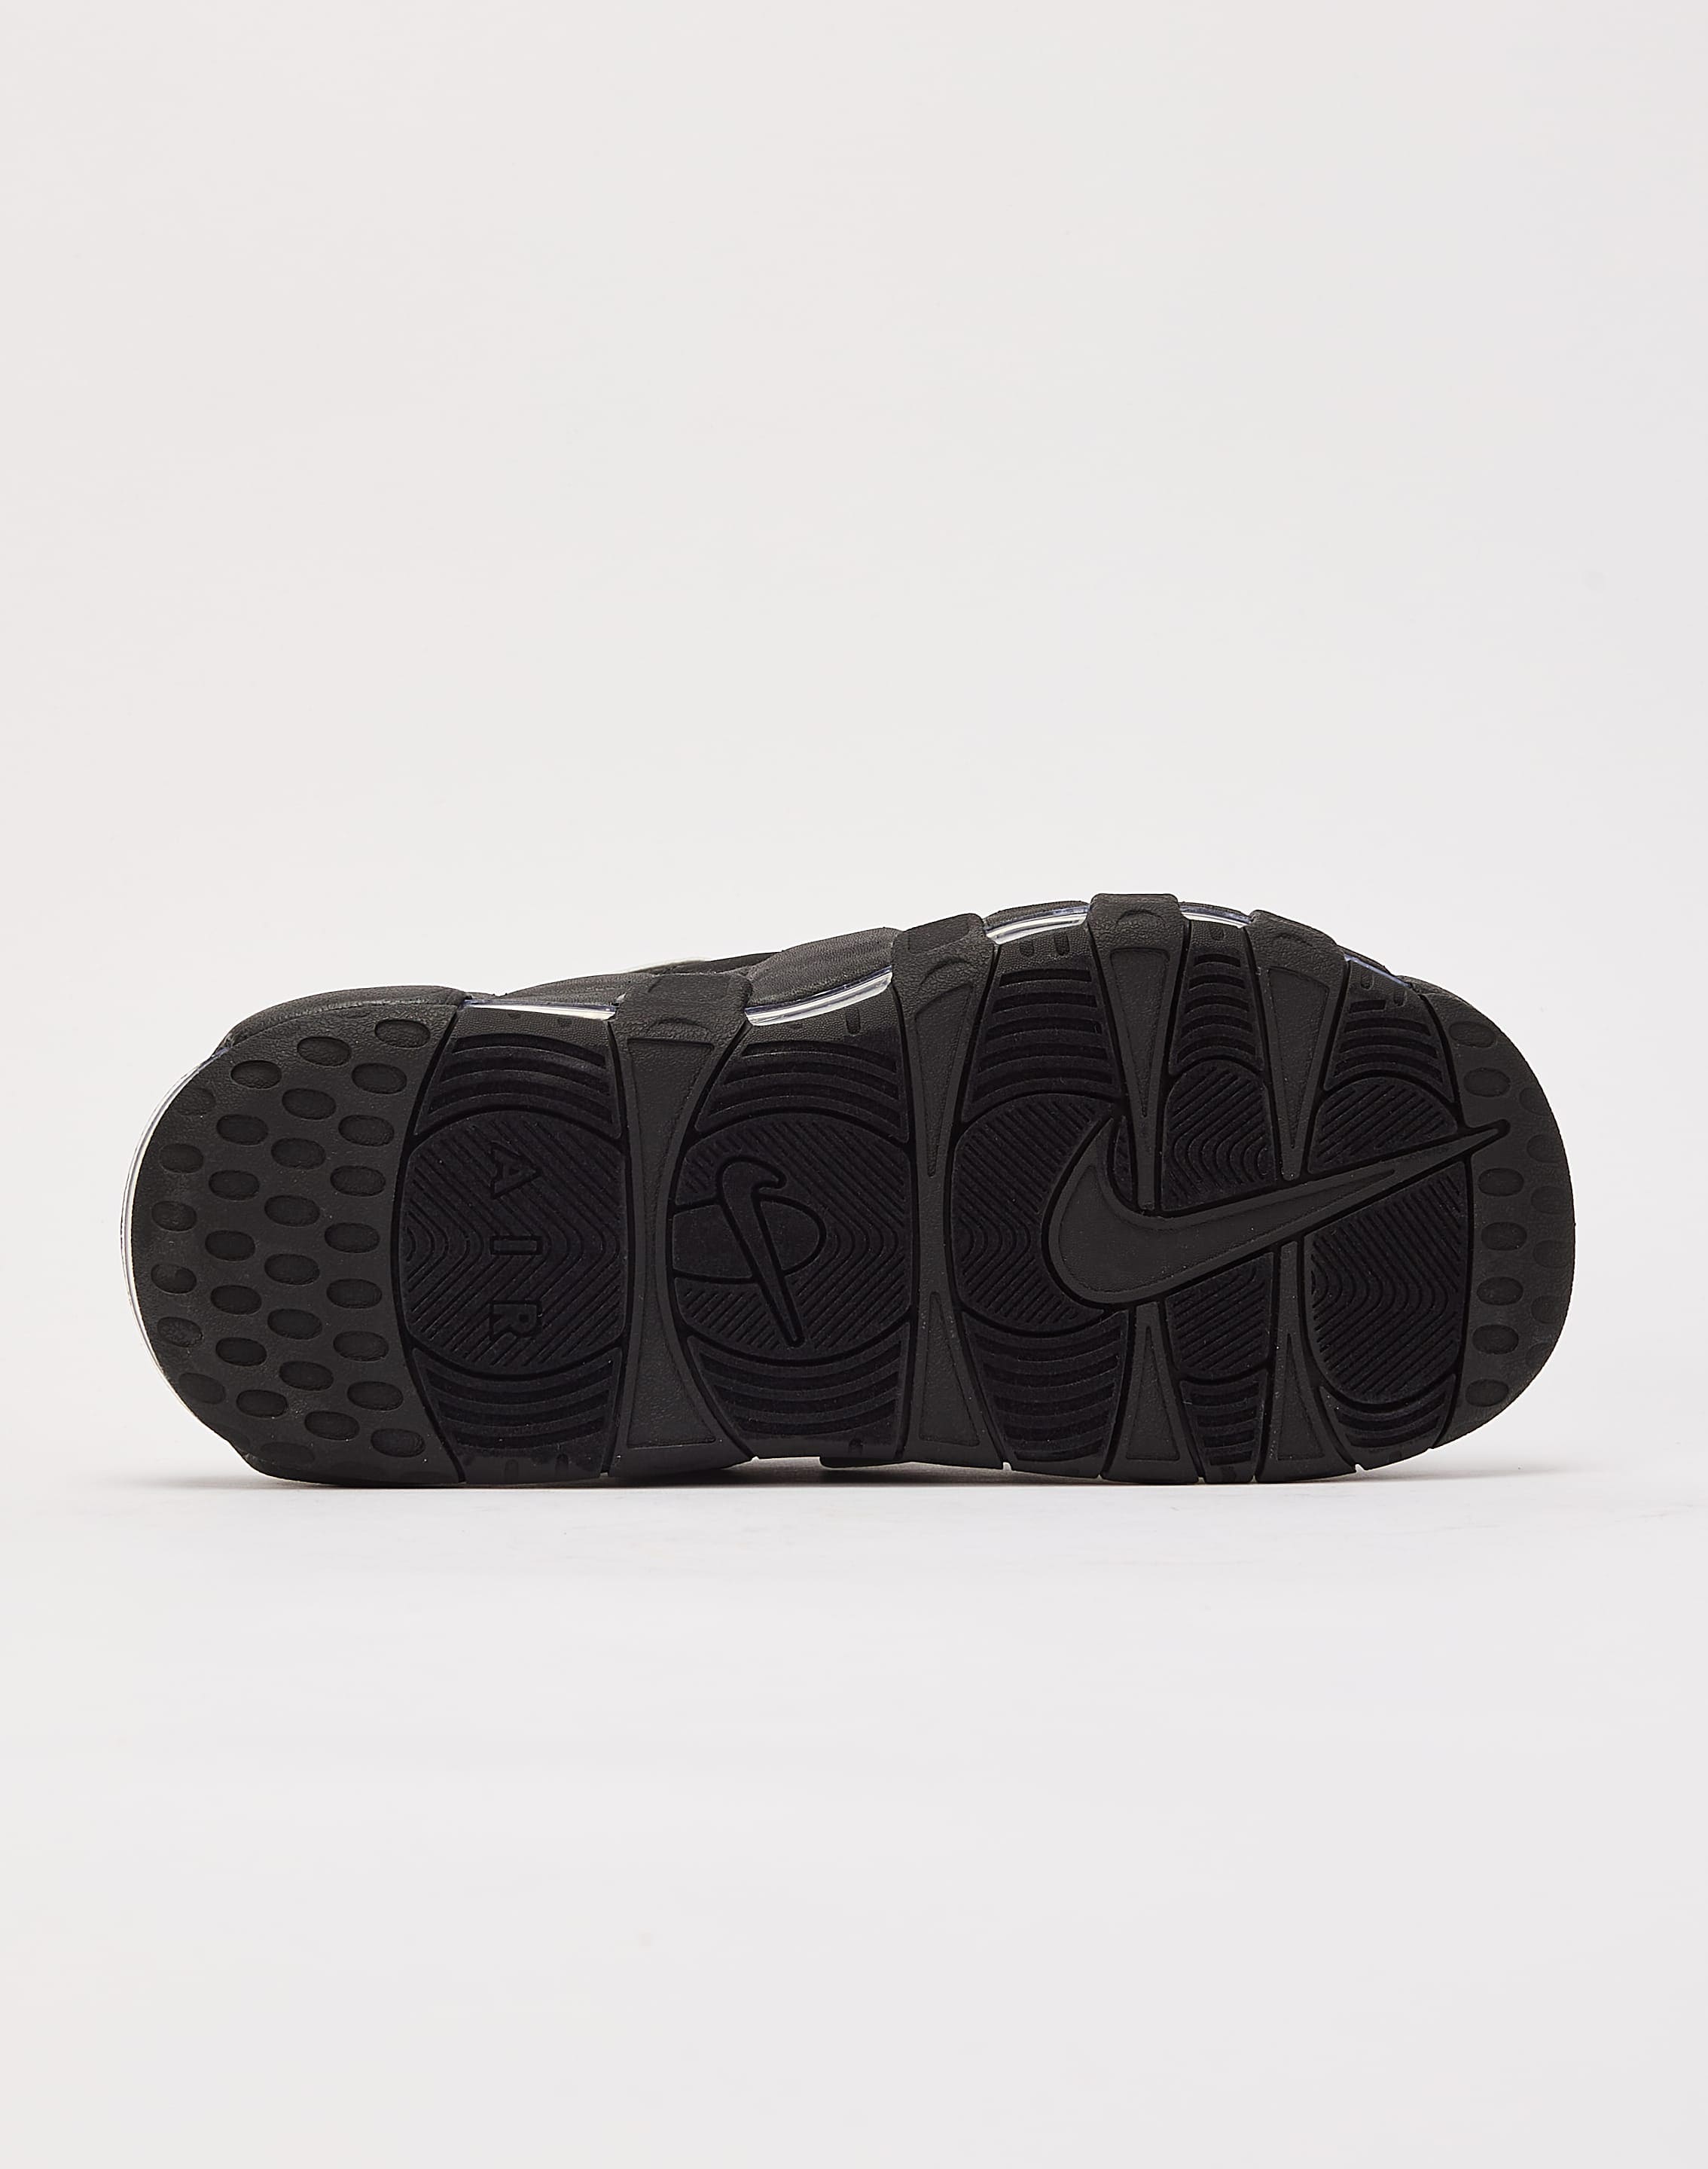 Nike Air More Uptempo Slides – DTLR